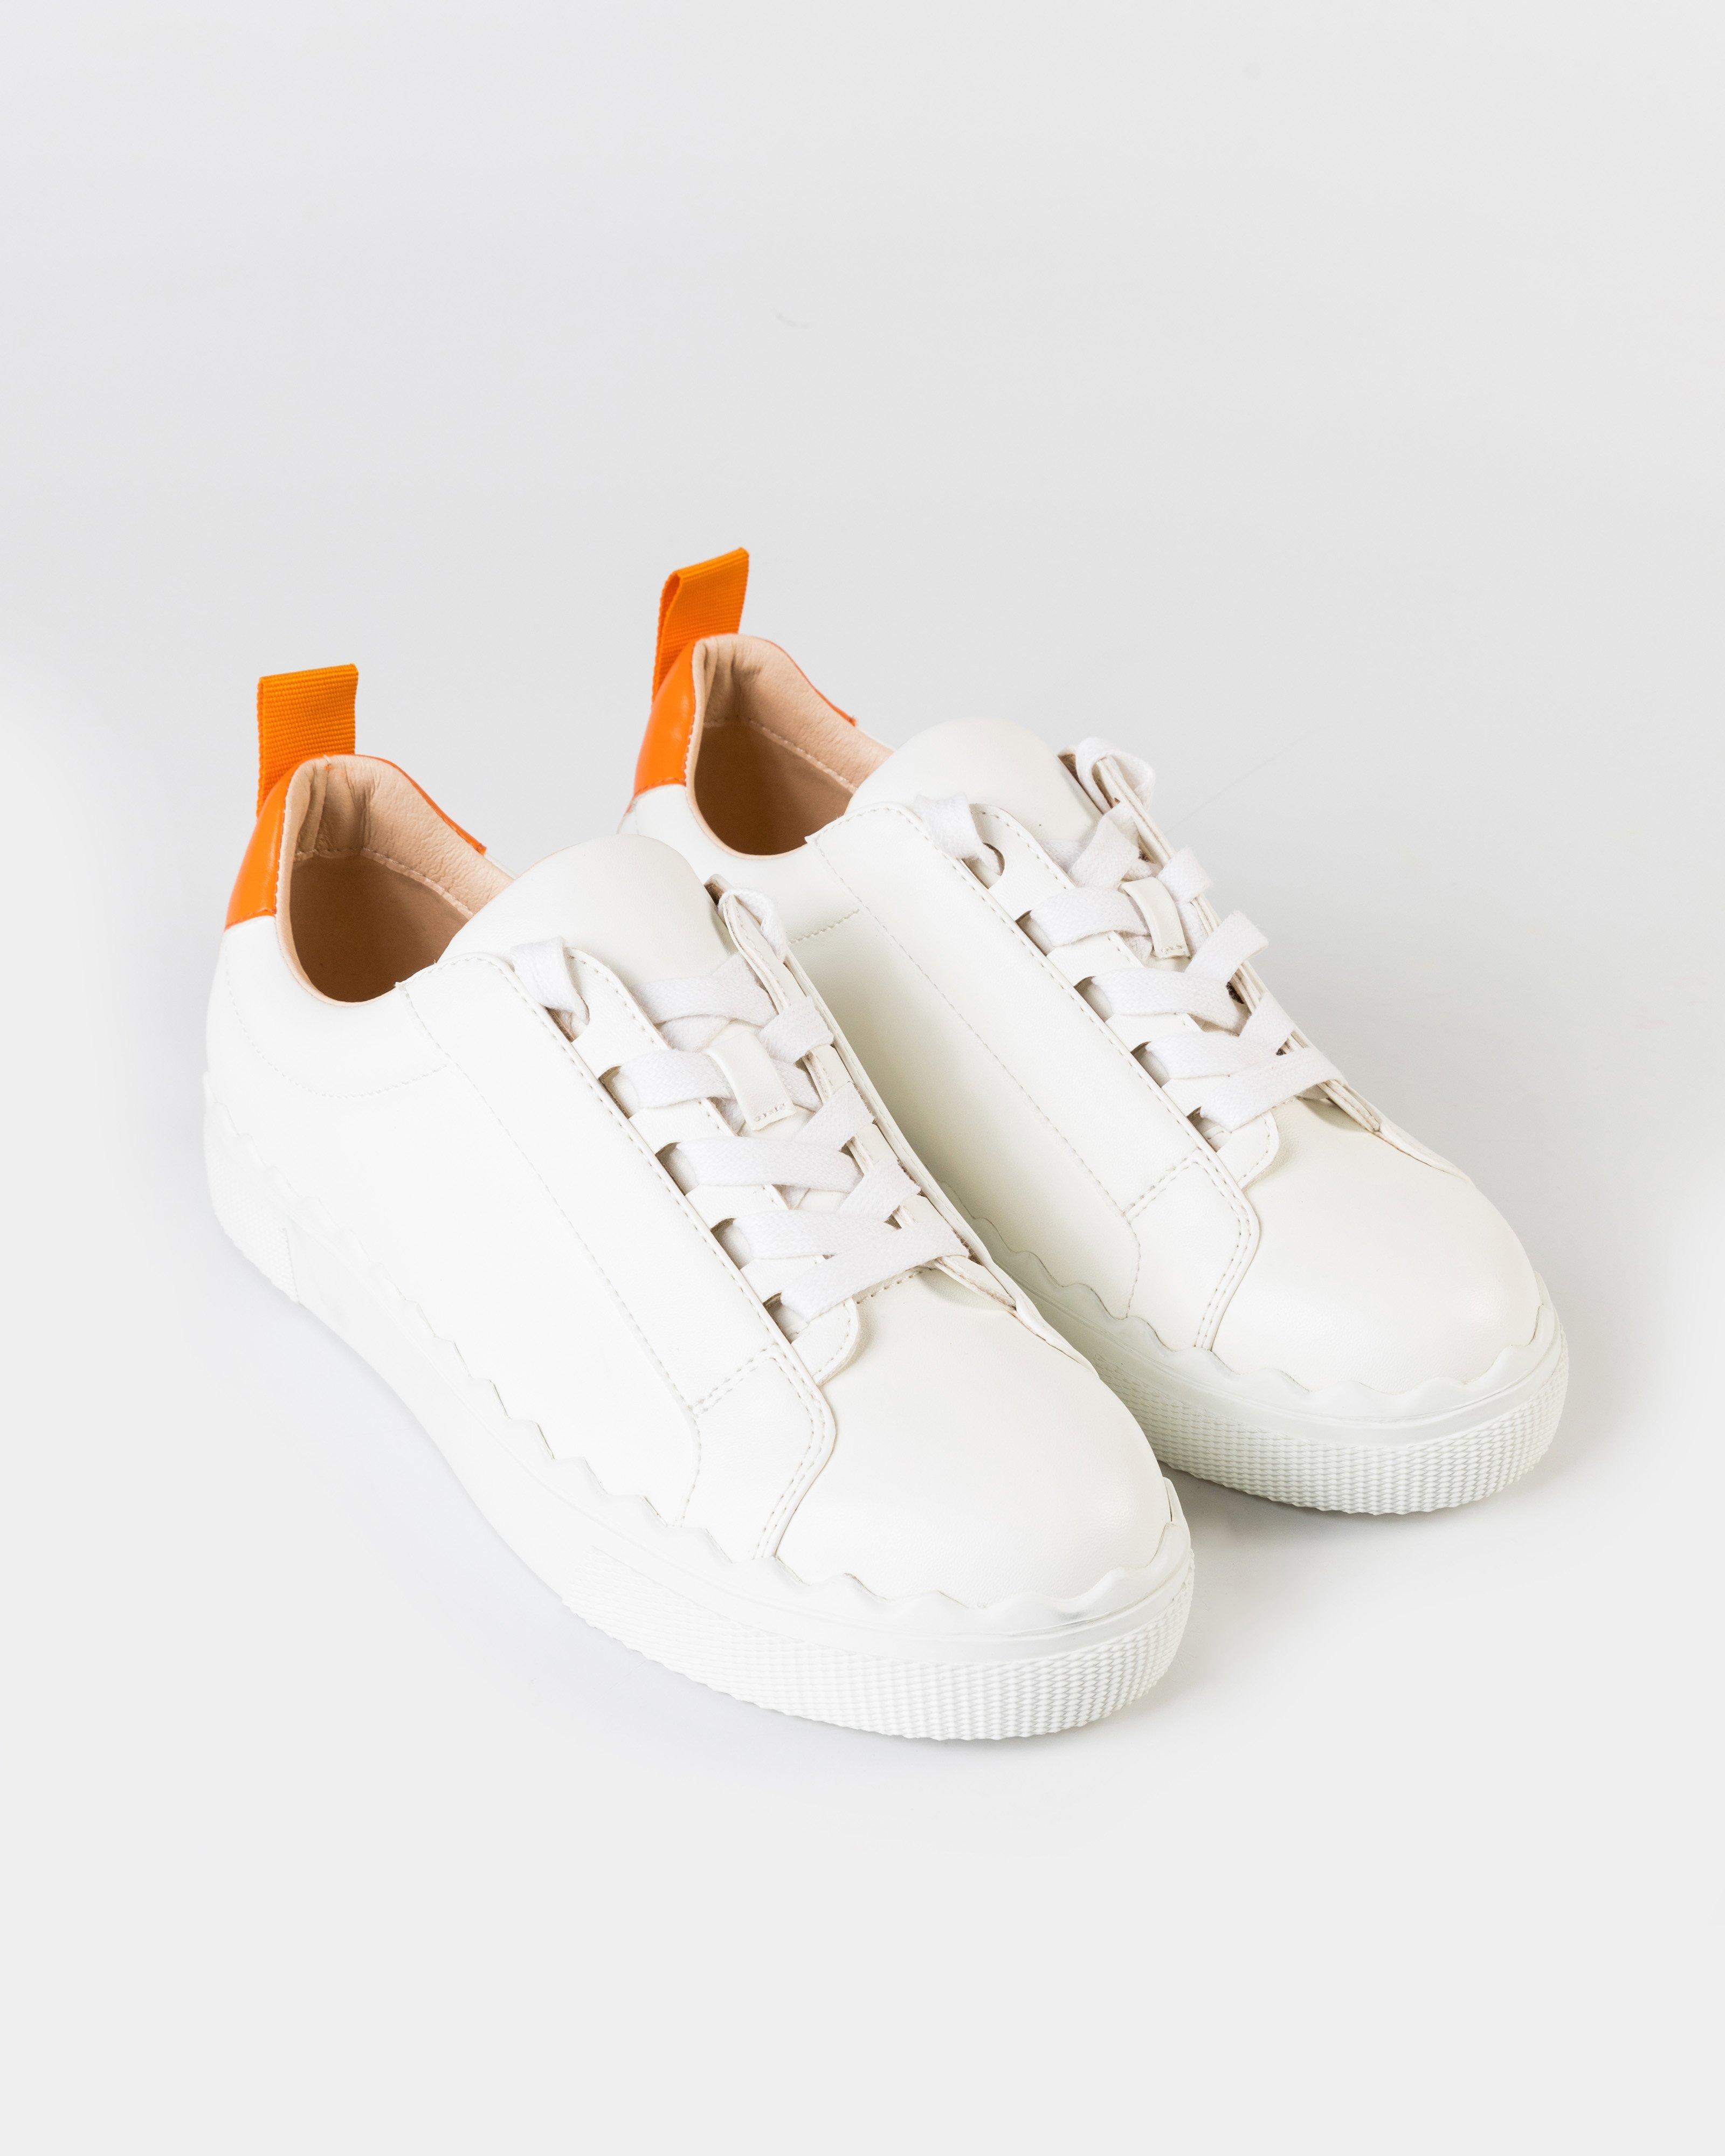 Greer Sneaker -  Orange